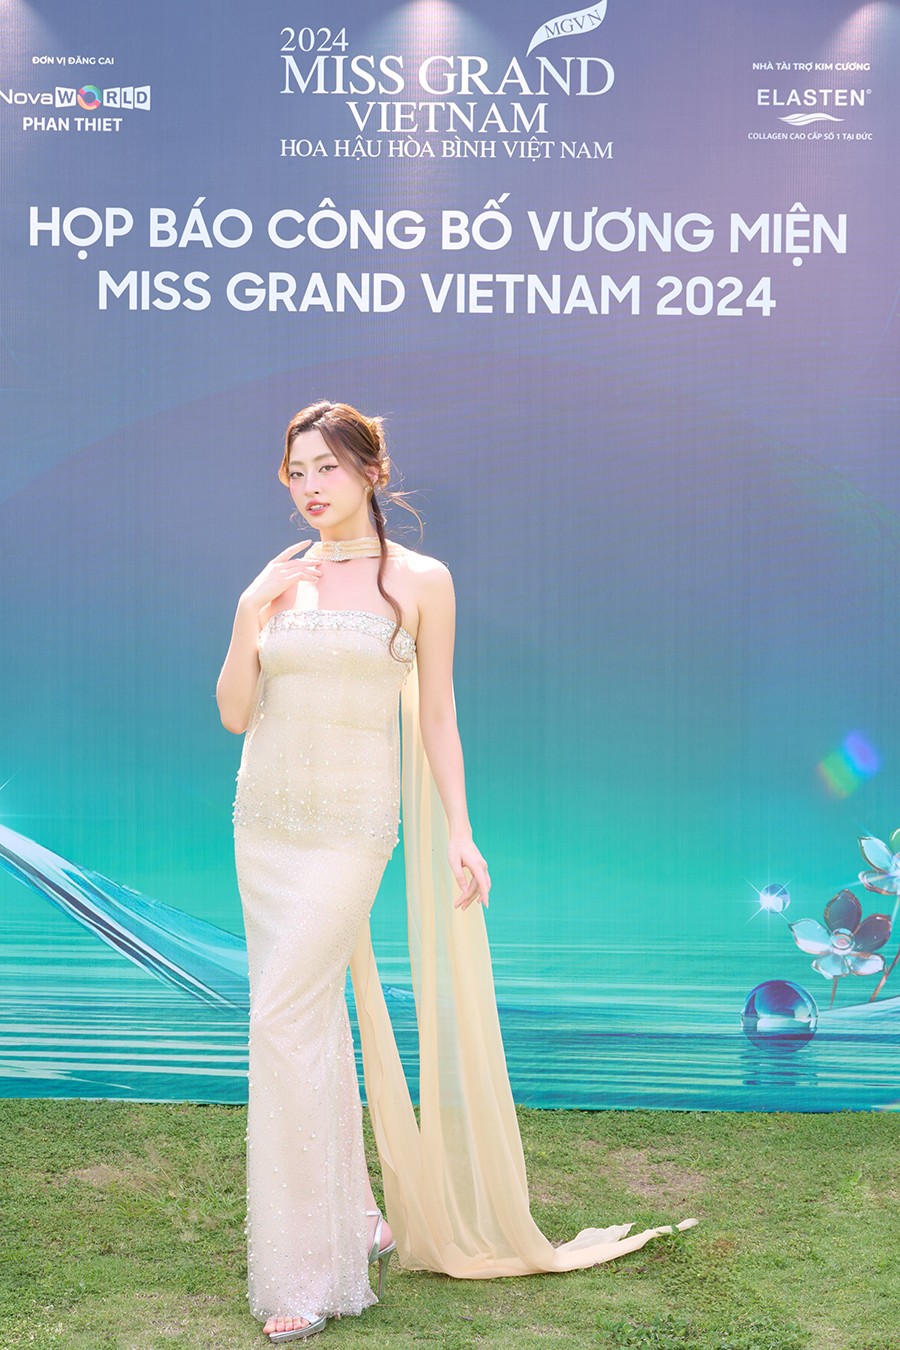 'Miss Grand Vietnam 2024' công bố vương miện từ vàng 24K, hơn 1.000 viên đá kim vương và ngọc lục bảo